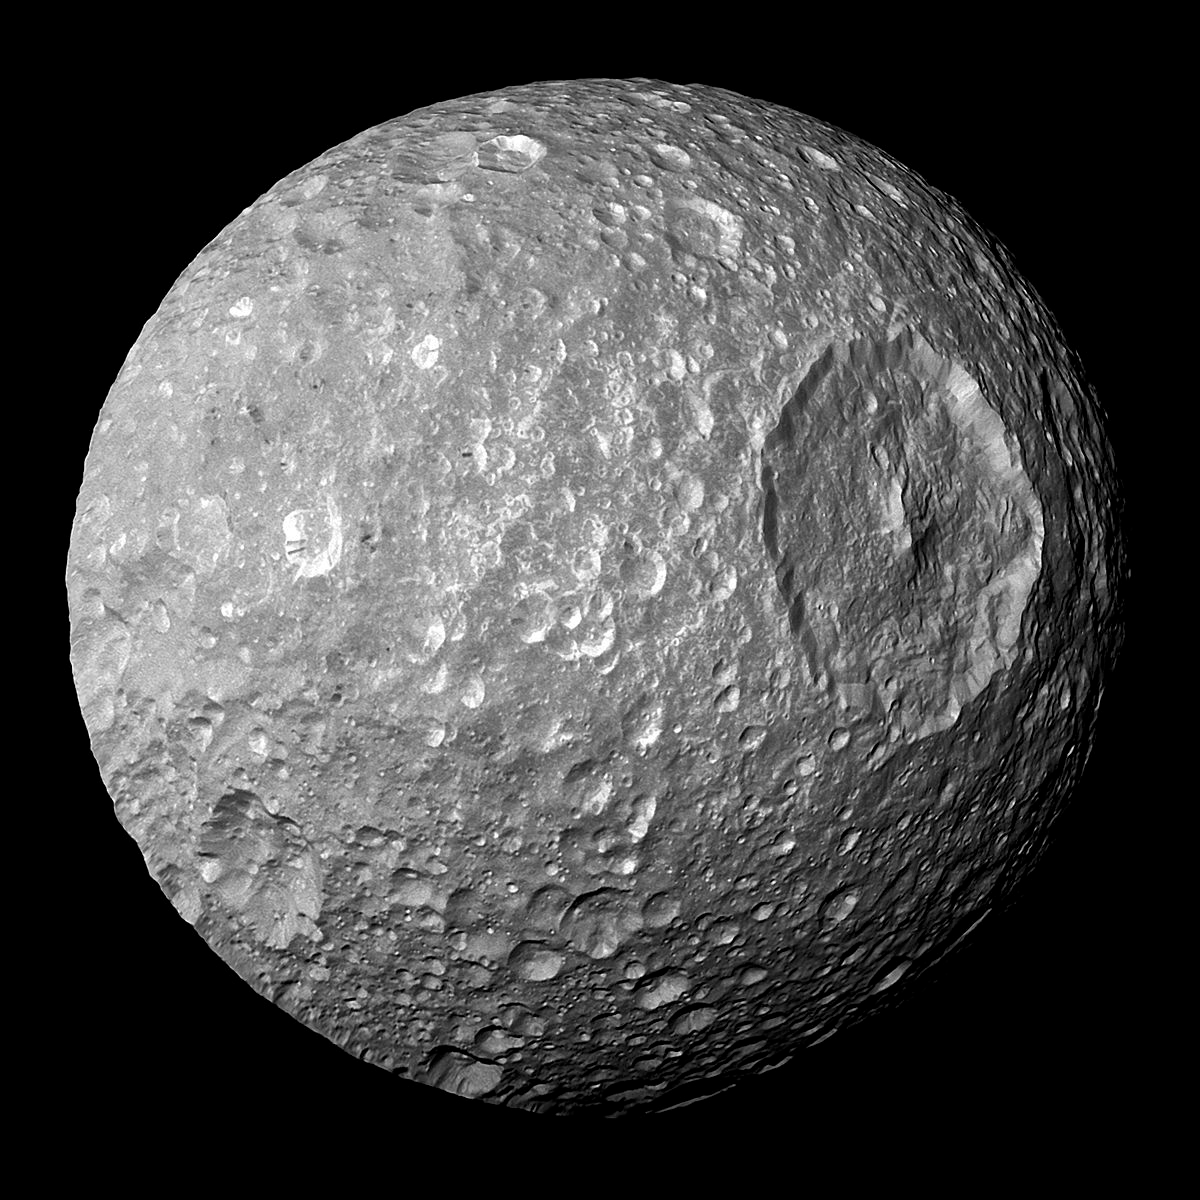 Pour rester dans le système solaire, les fans de Star Wars verront peut être quelque chose en observant cette image de Mimas, la lune de Saturne, observée par la sonde Cassini.